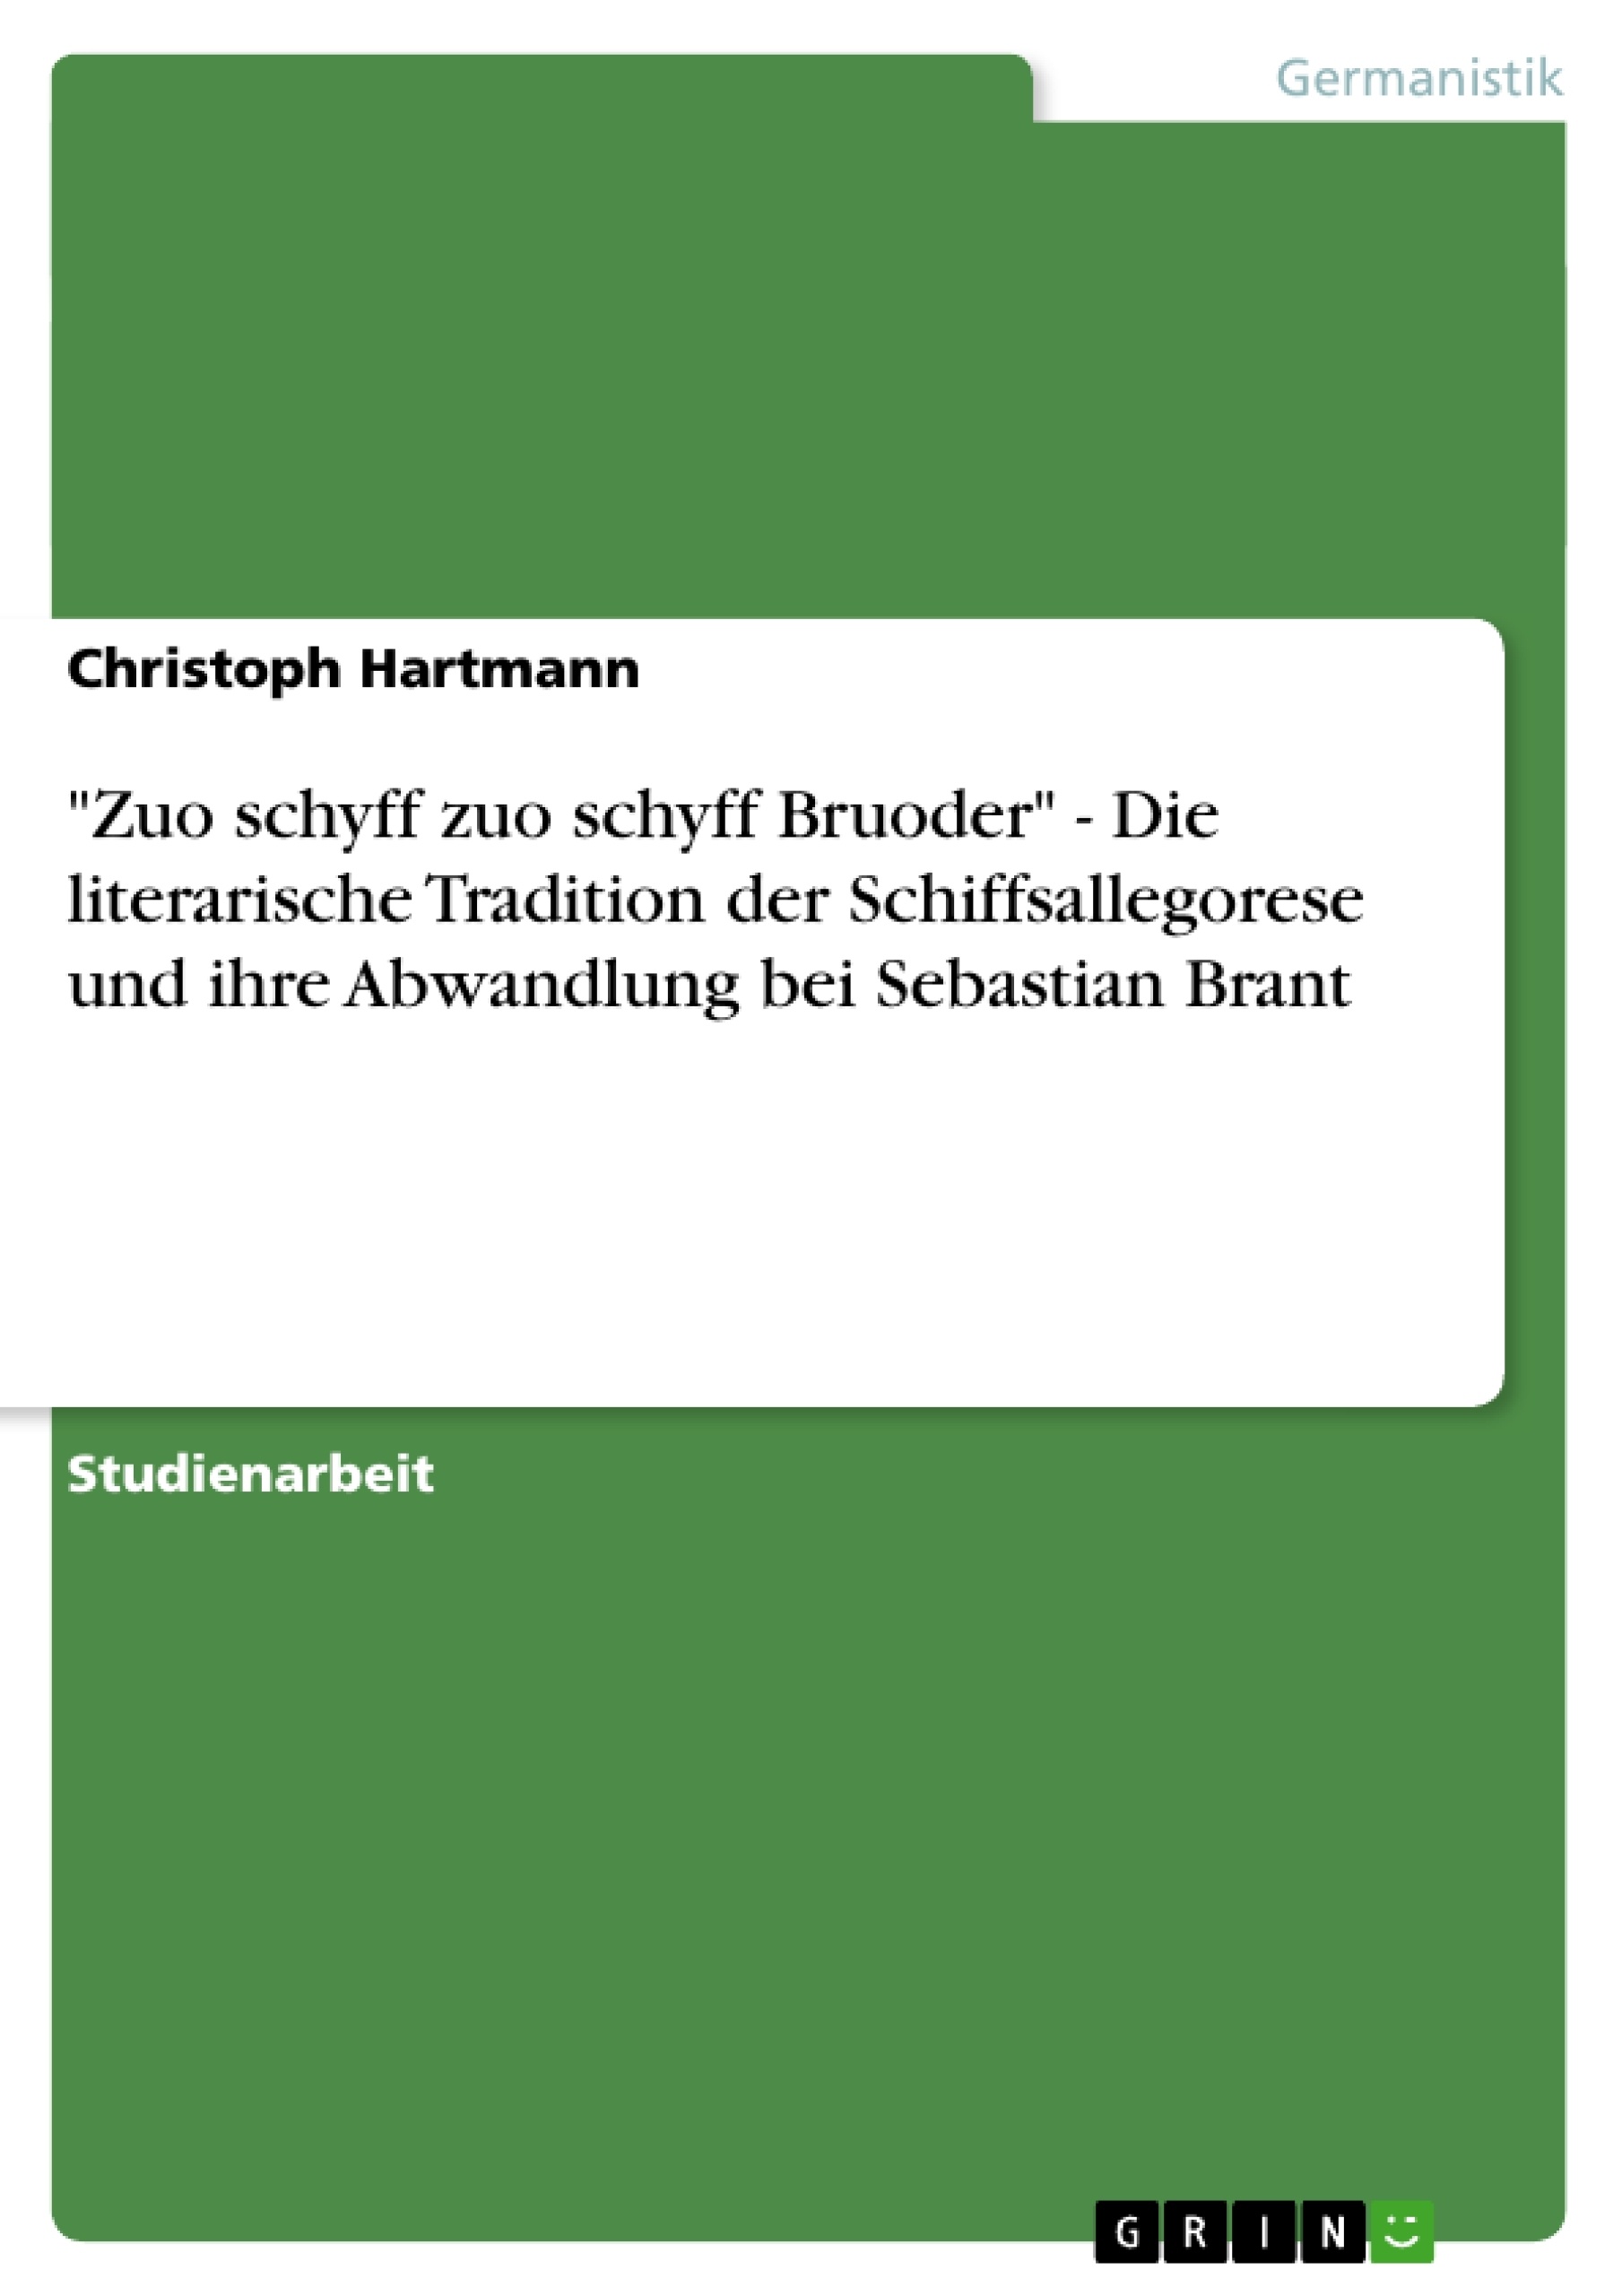 Title: "Zuo schyff zuo schyff Bruoder" - Die literarische Tradition der Schiffsallegorese und ihre Abwandlung bei Sebastian Brant